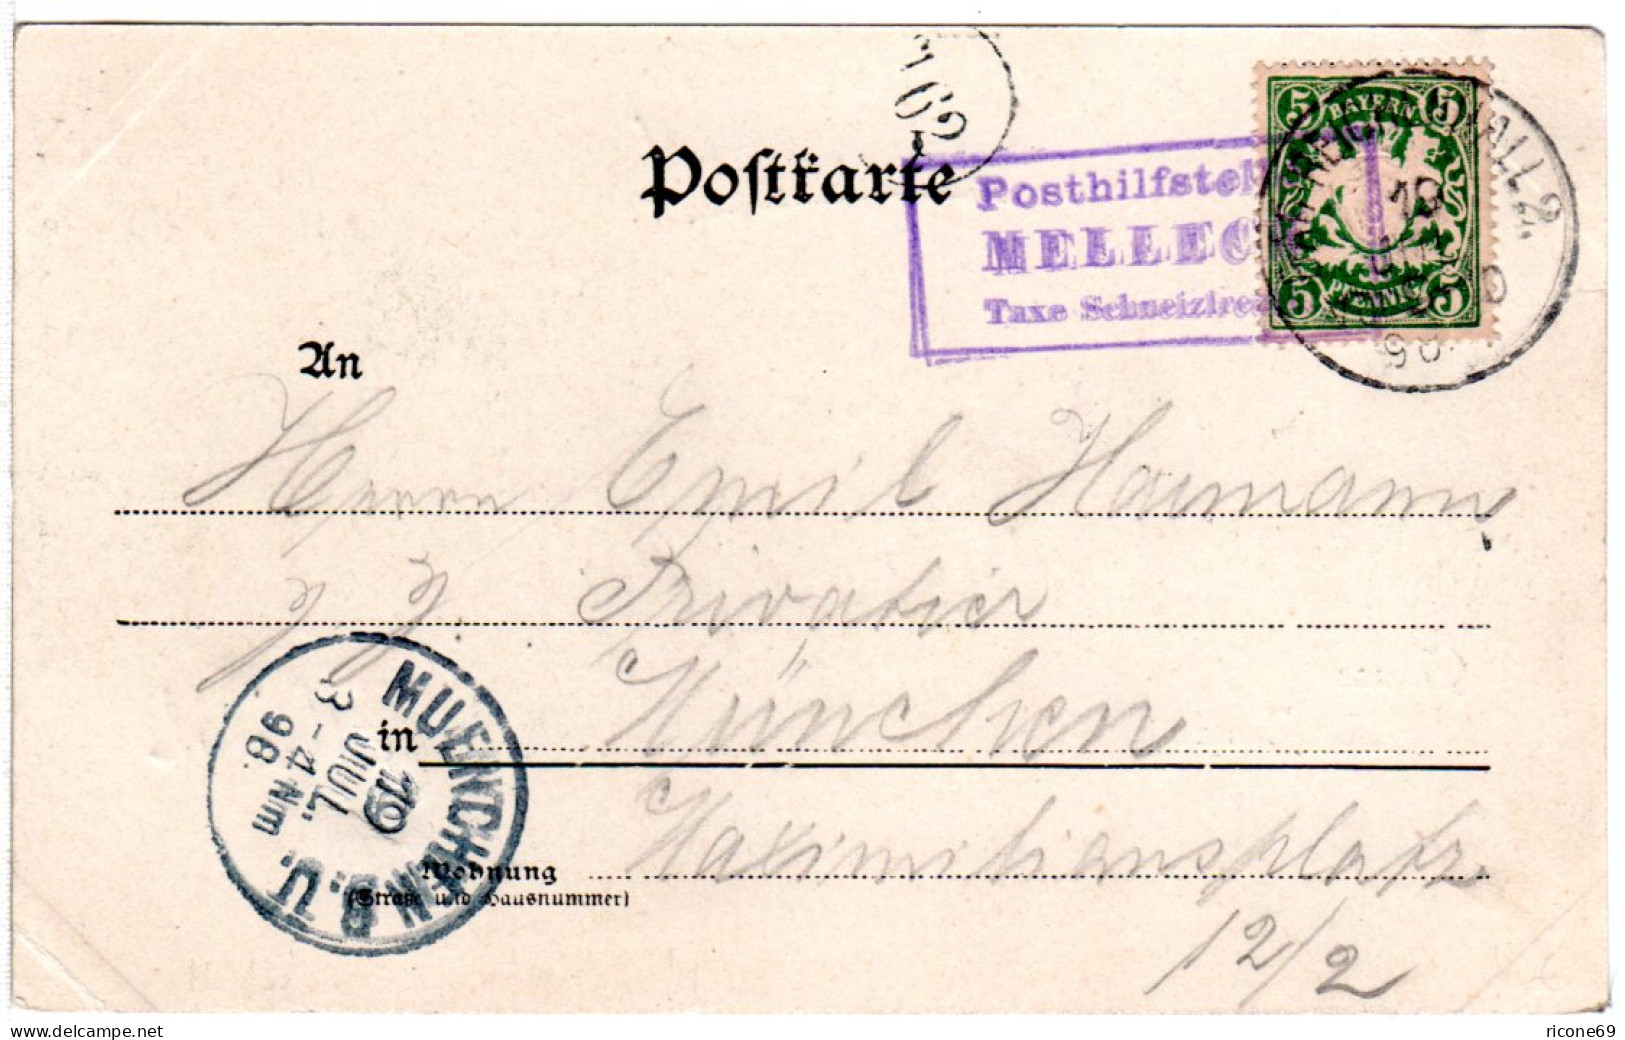 Bayern 1898, R3 Posthilfstelle MELLECK Taxe Schneizlreuth Auf Sw-AK M. 5 Pf. - Covers & Documents